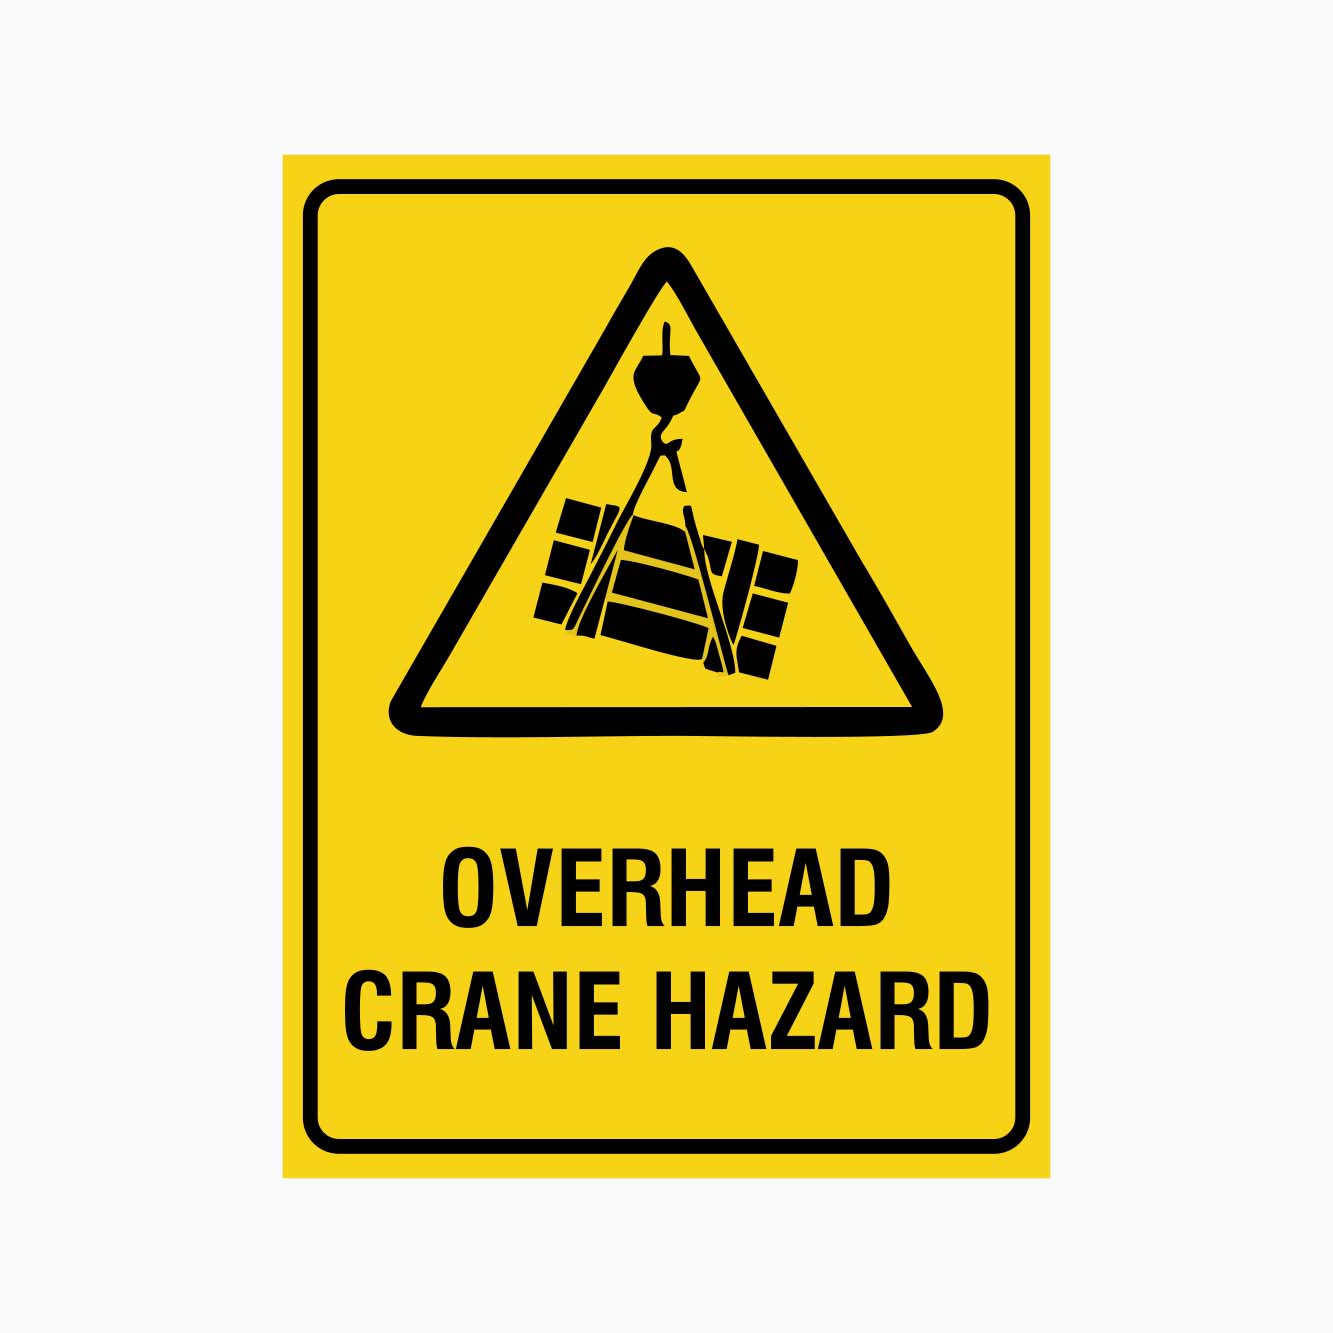 OVERHEAD CRANE HAZARD SIGN - GET SIGNS